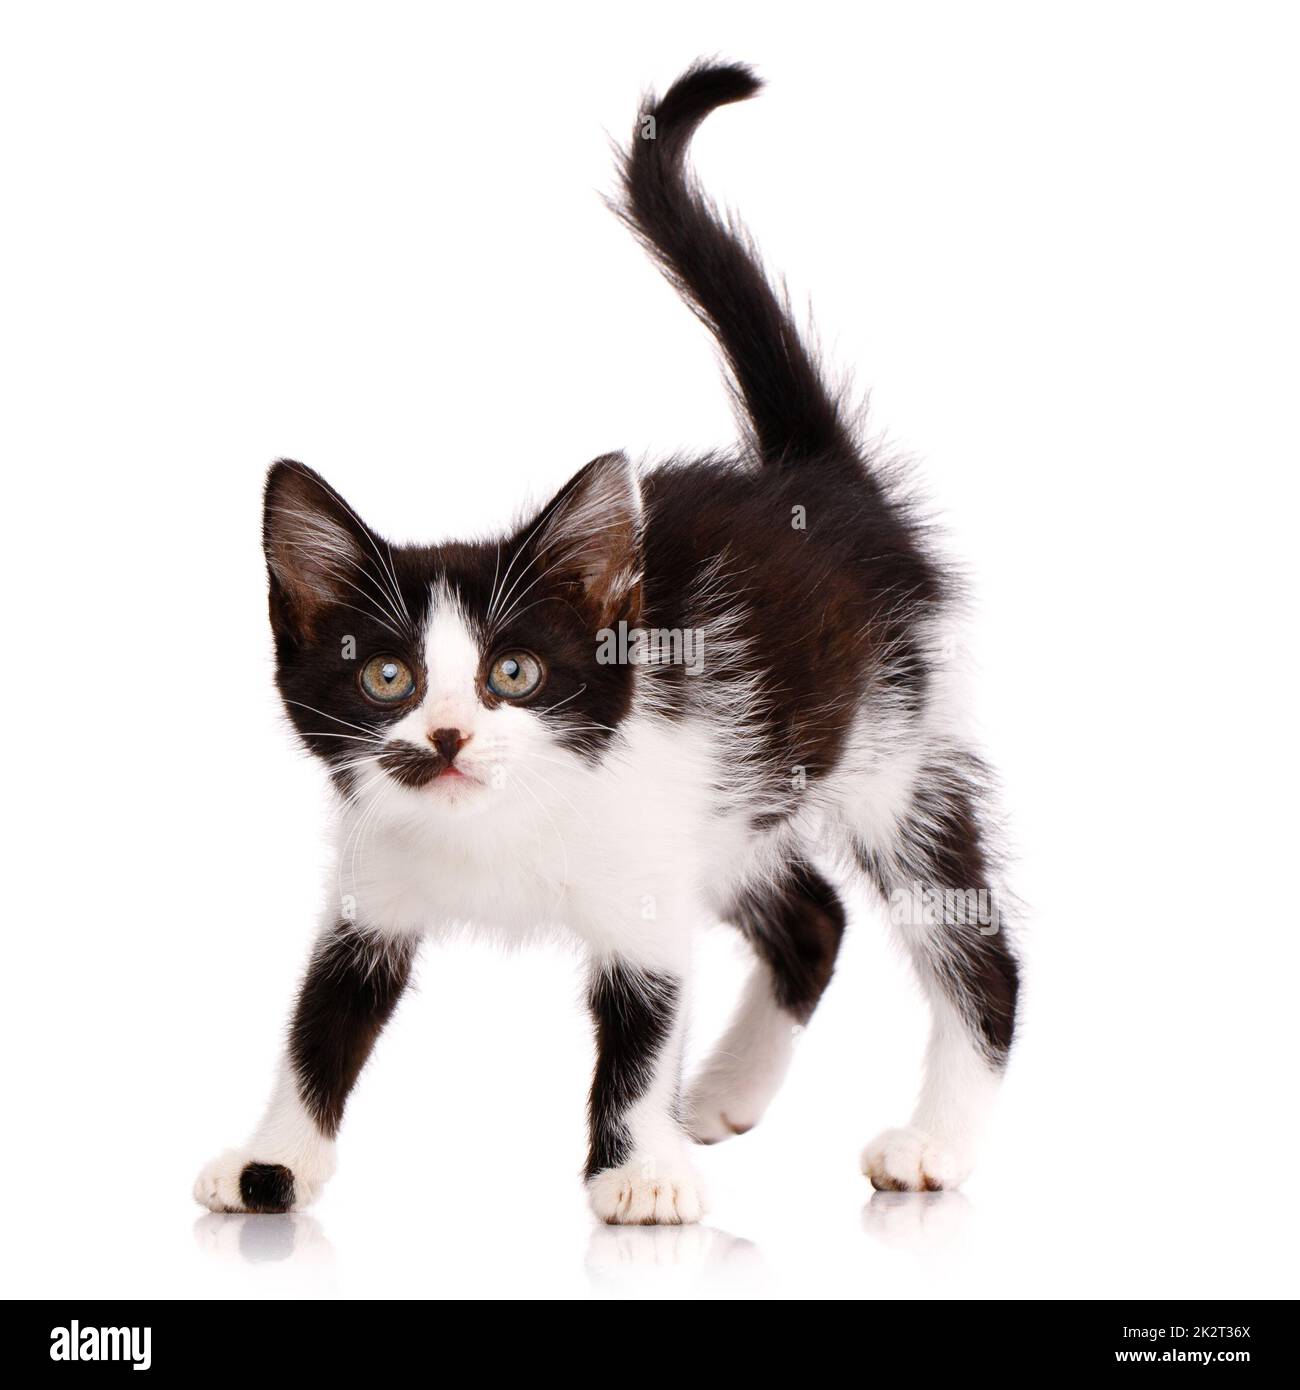 Porträt eines verspielten, fokussierten schwarz-weißen Kätzchens, das angreifen will. Isoliert auf weißem Hintergrund. Stockfoto